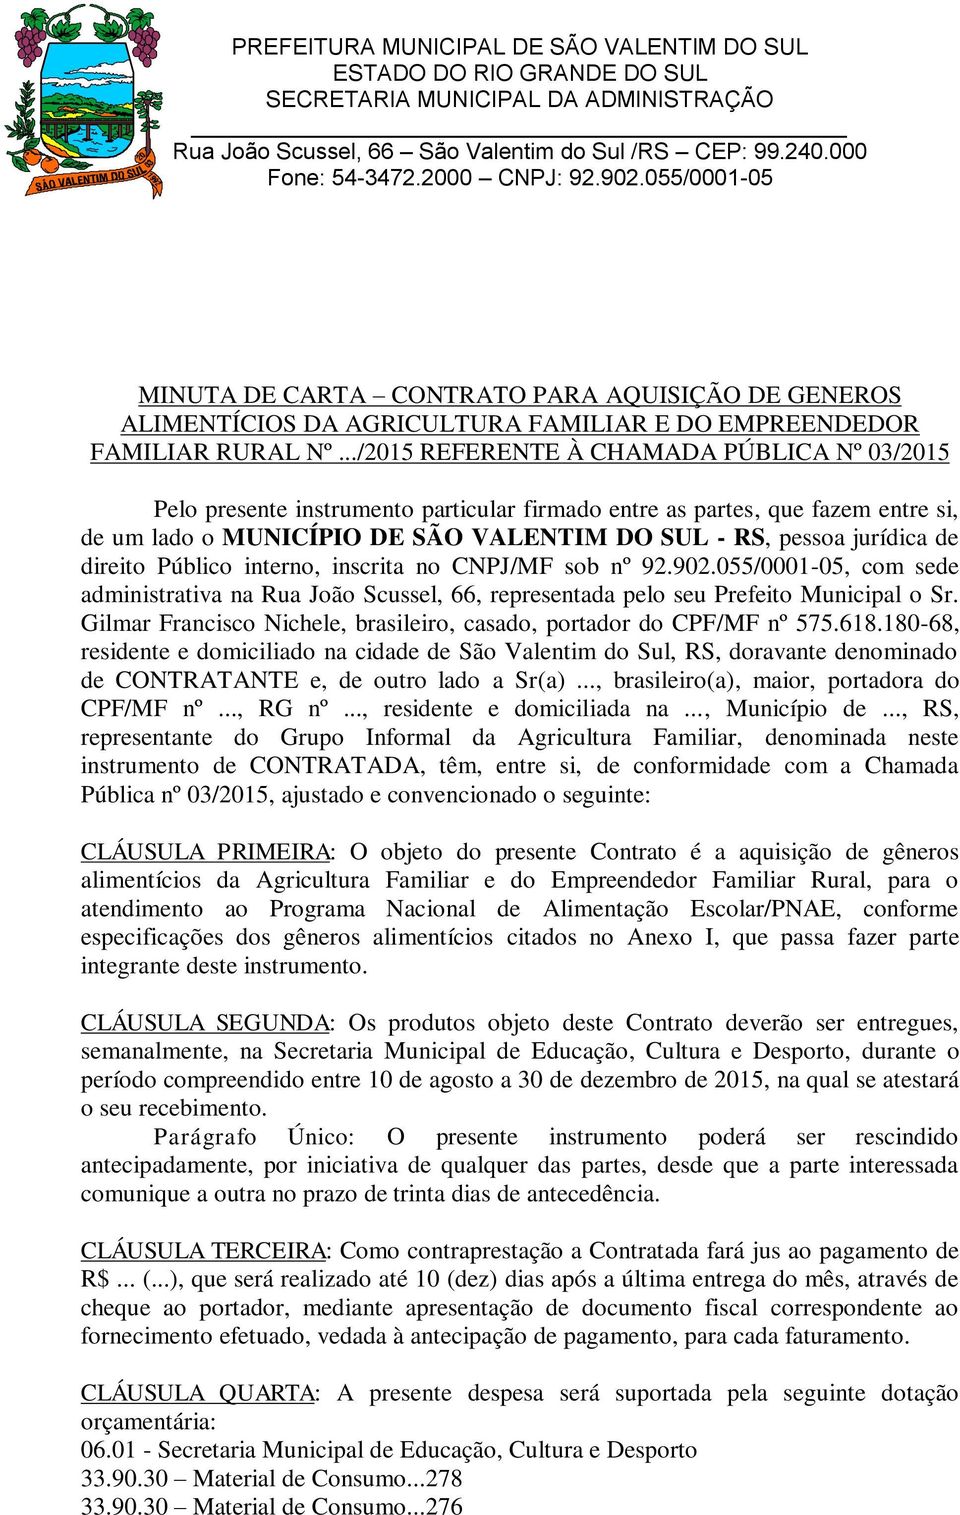 direito Público interno, inscrita no CNPJ/MF sob nº 92.902.055/0001-05, com sede administrativa na Rua João Scussel, 66, representada pelo seu Prefeito Municipal o Sr.